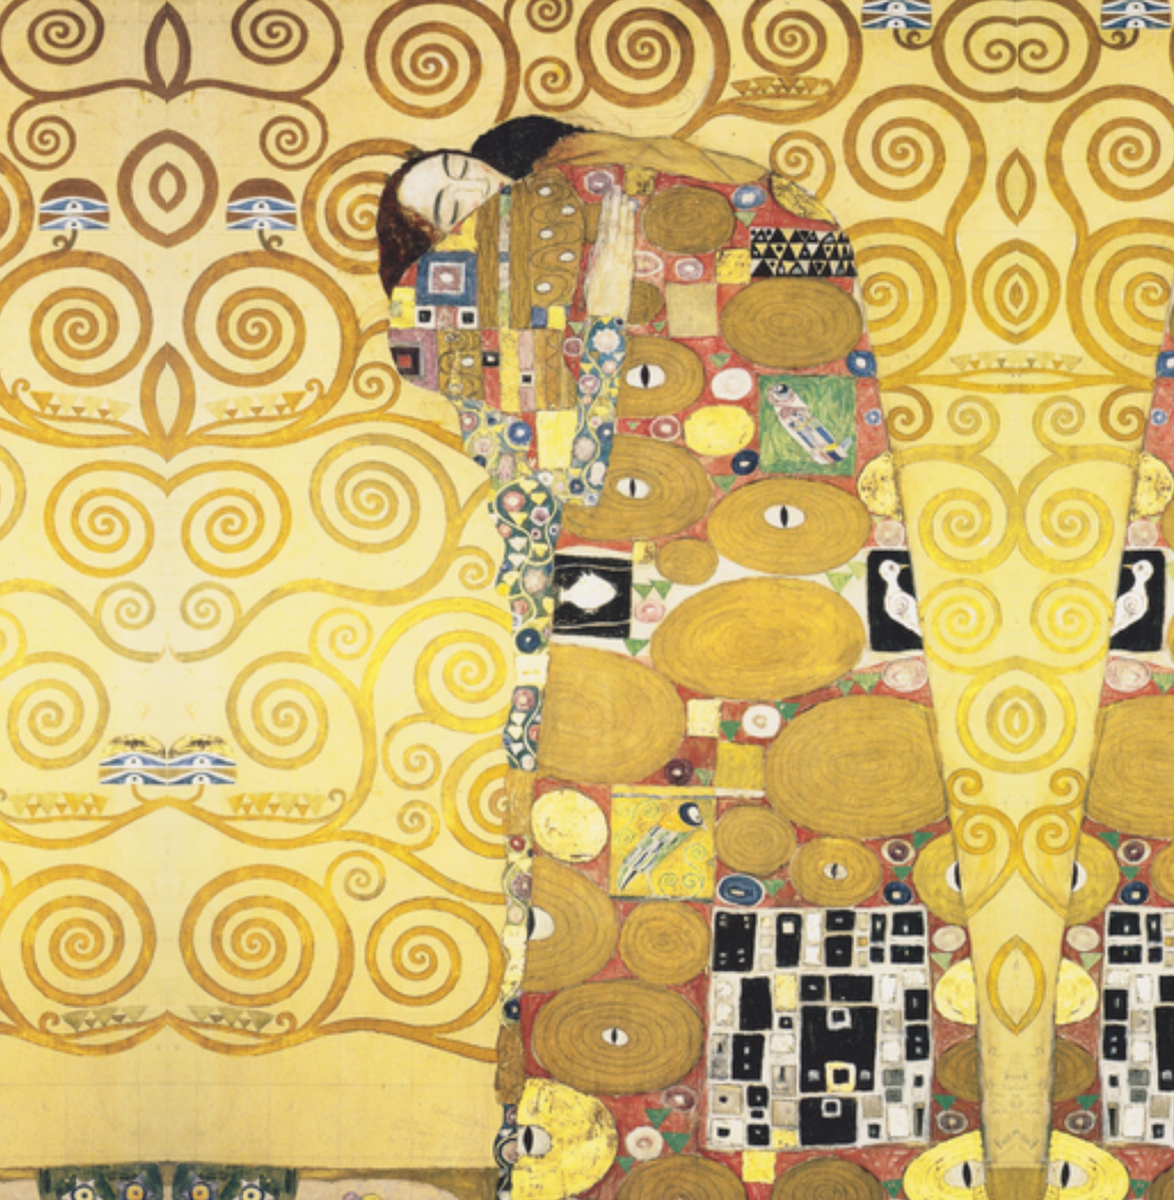  Этот потрясающий дизайн изображает пару в интимных объятиях, что является распространенным мотивом работ Климта и выполнено в его отличительном стиле с использованием золотого фона из элегантных...